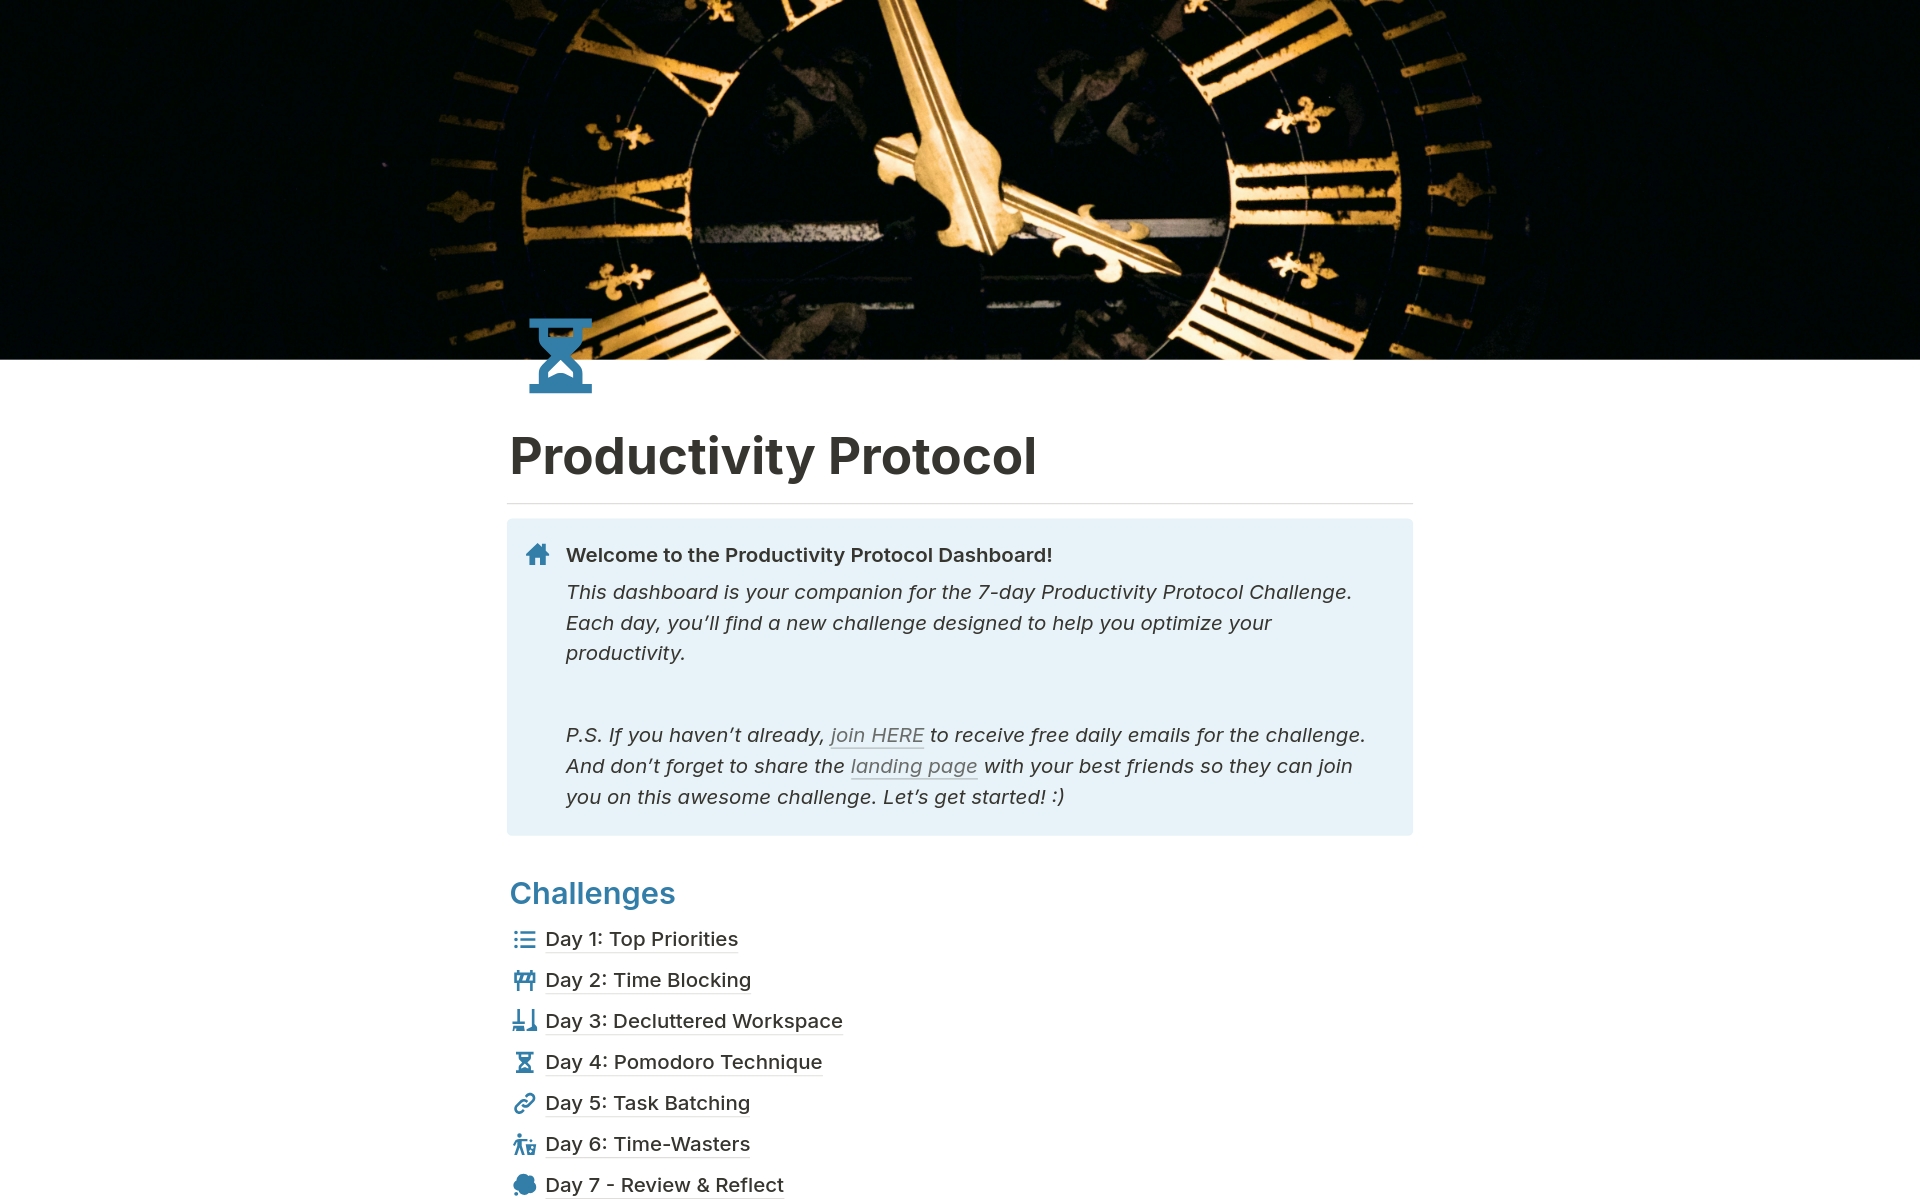 Uma prévia do modelo para 7-Day “Productivity Protocol” Challenge